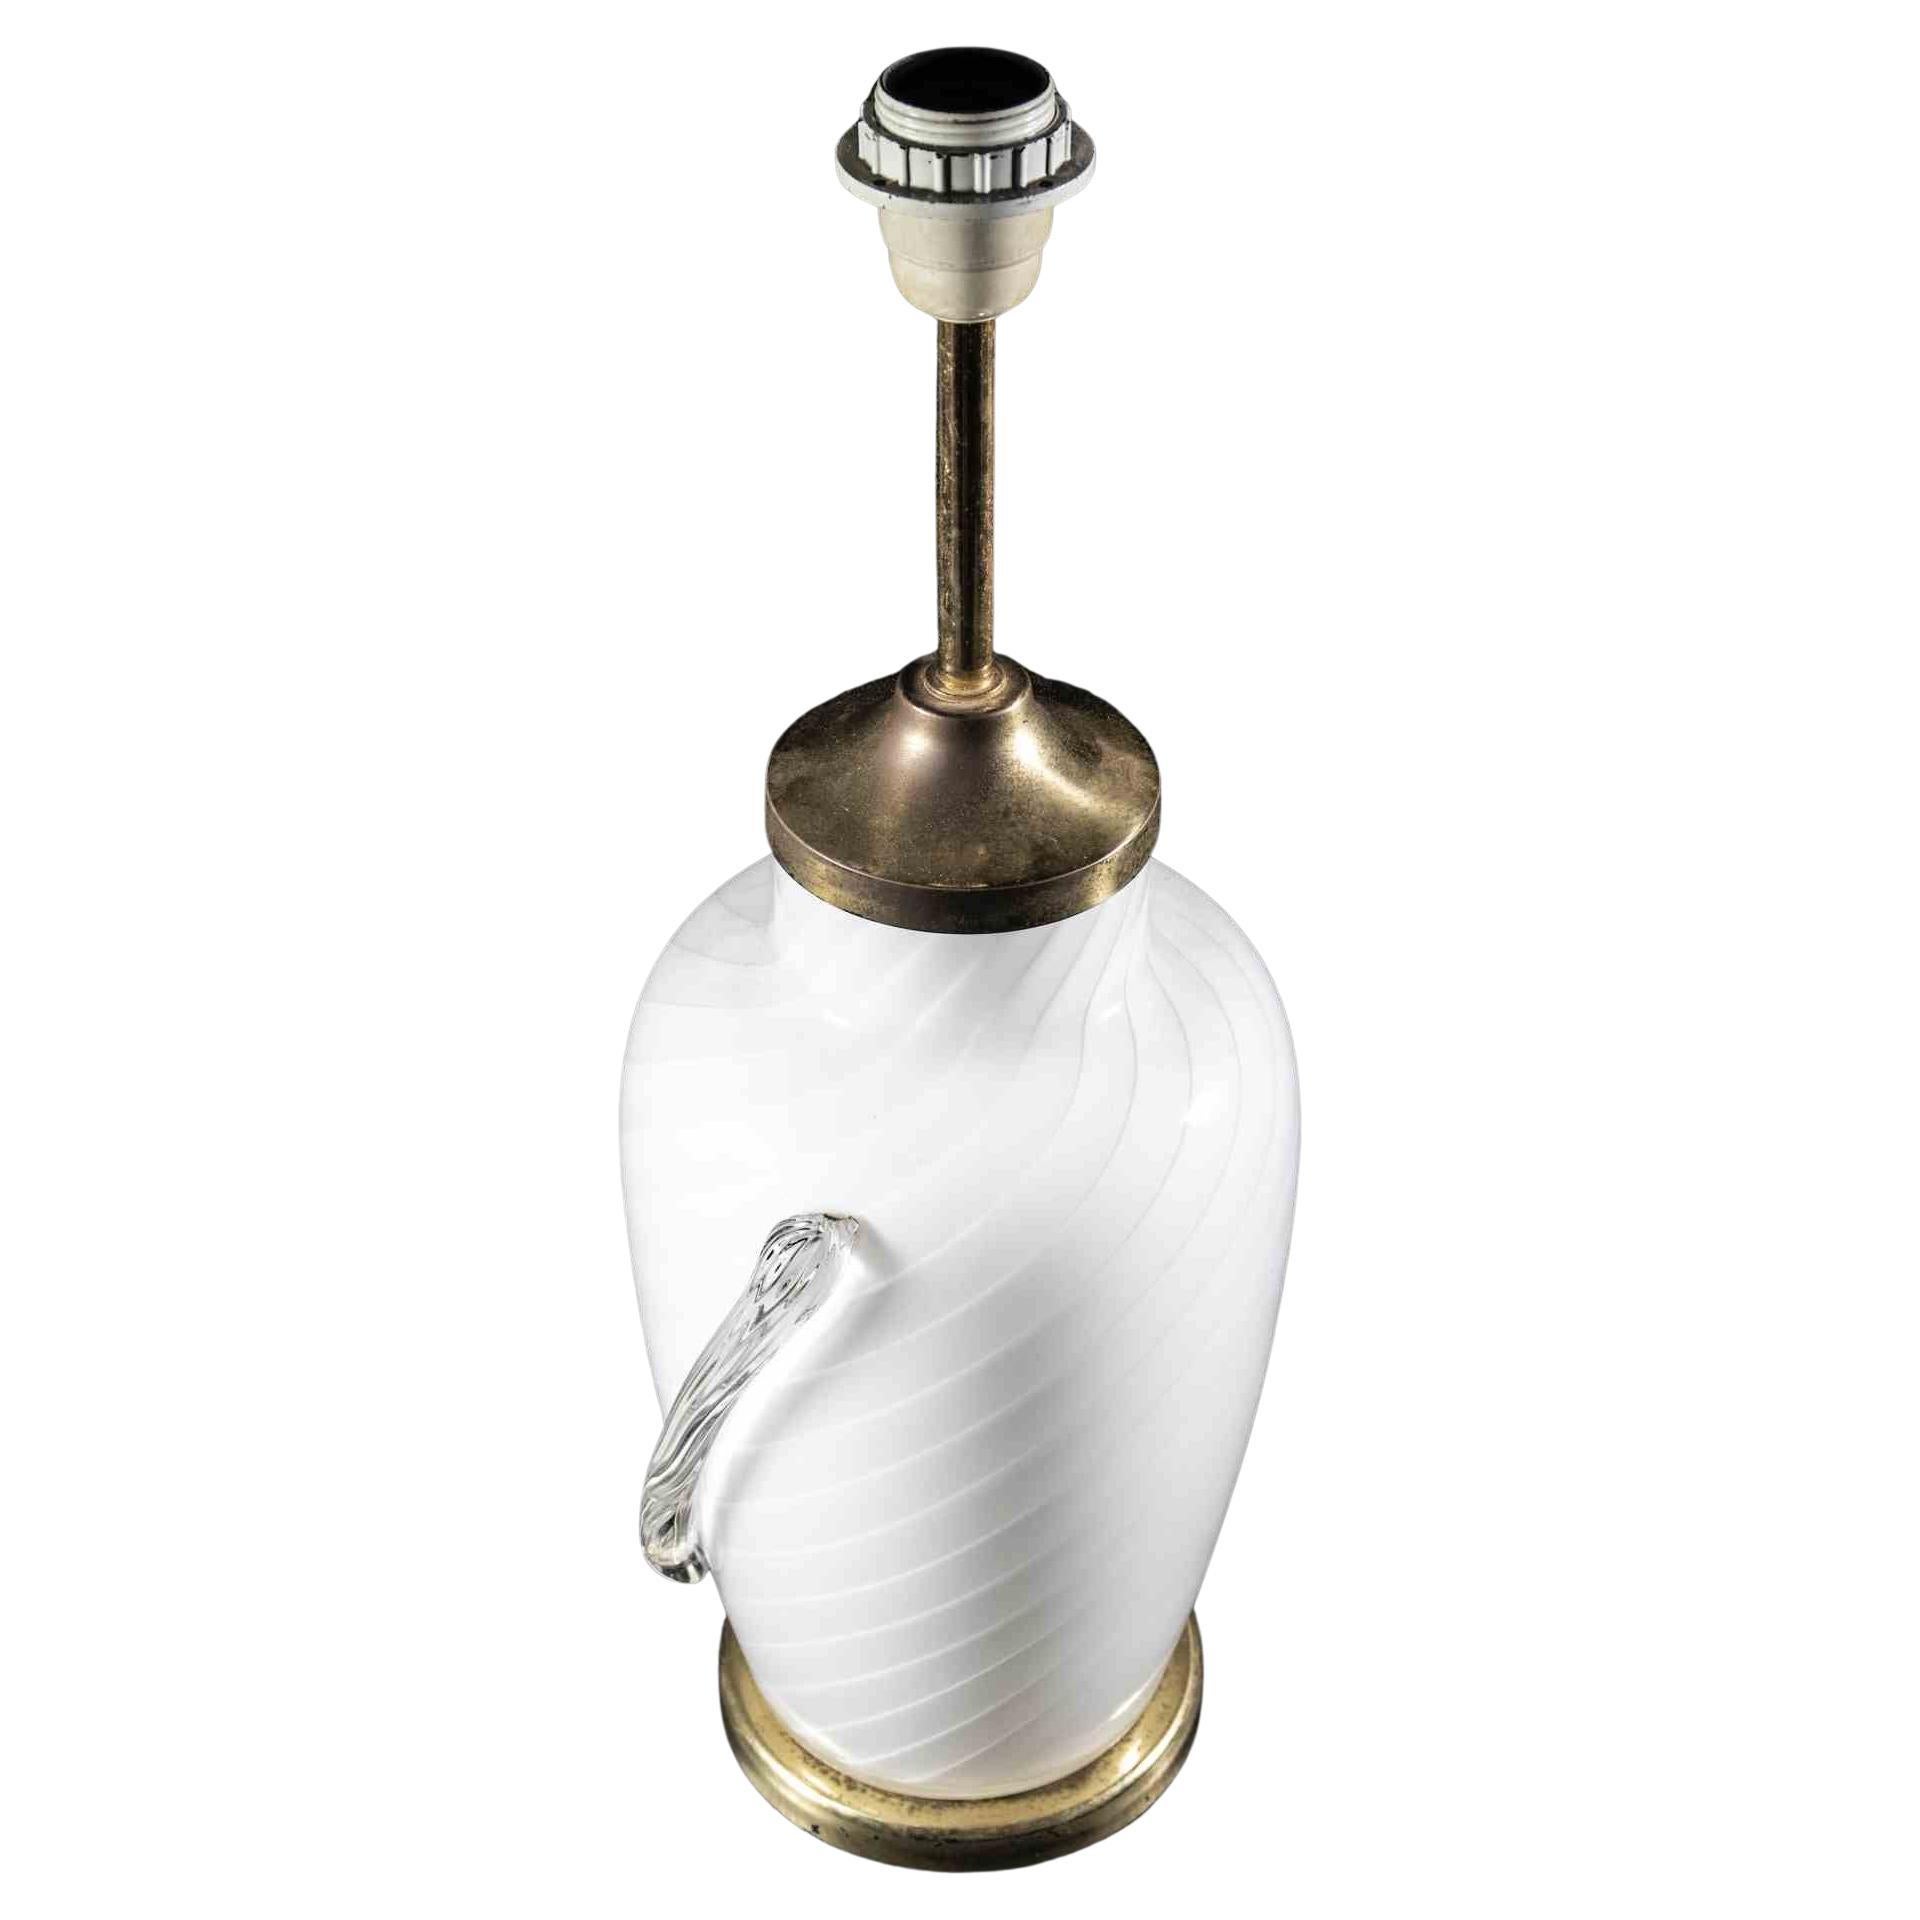 Die Murano-Tischlampe ist eine originelle Lampe, die in der Hälfte des 20. Jahrhunderts von einem italienischen Designer entworfen wurde.

Eine Vintage-Lampe mit einem Körper aus weißem Muranoglas und eleganten Messingkanten.

Neuwertiger